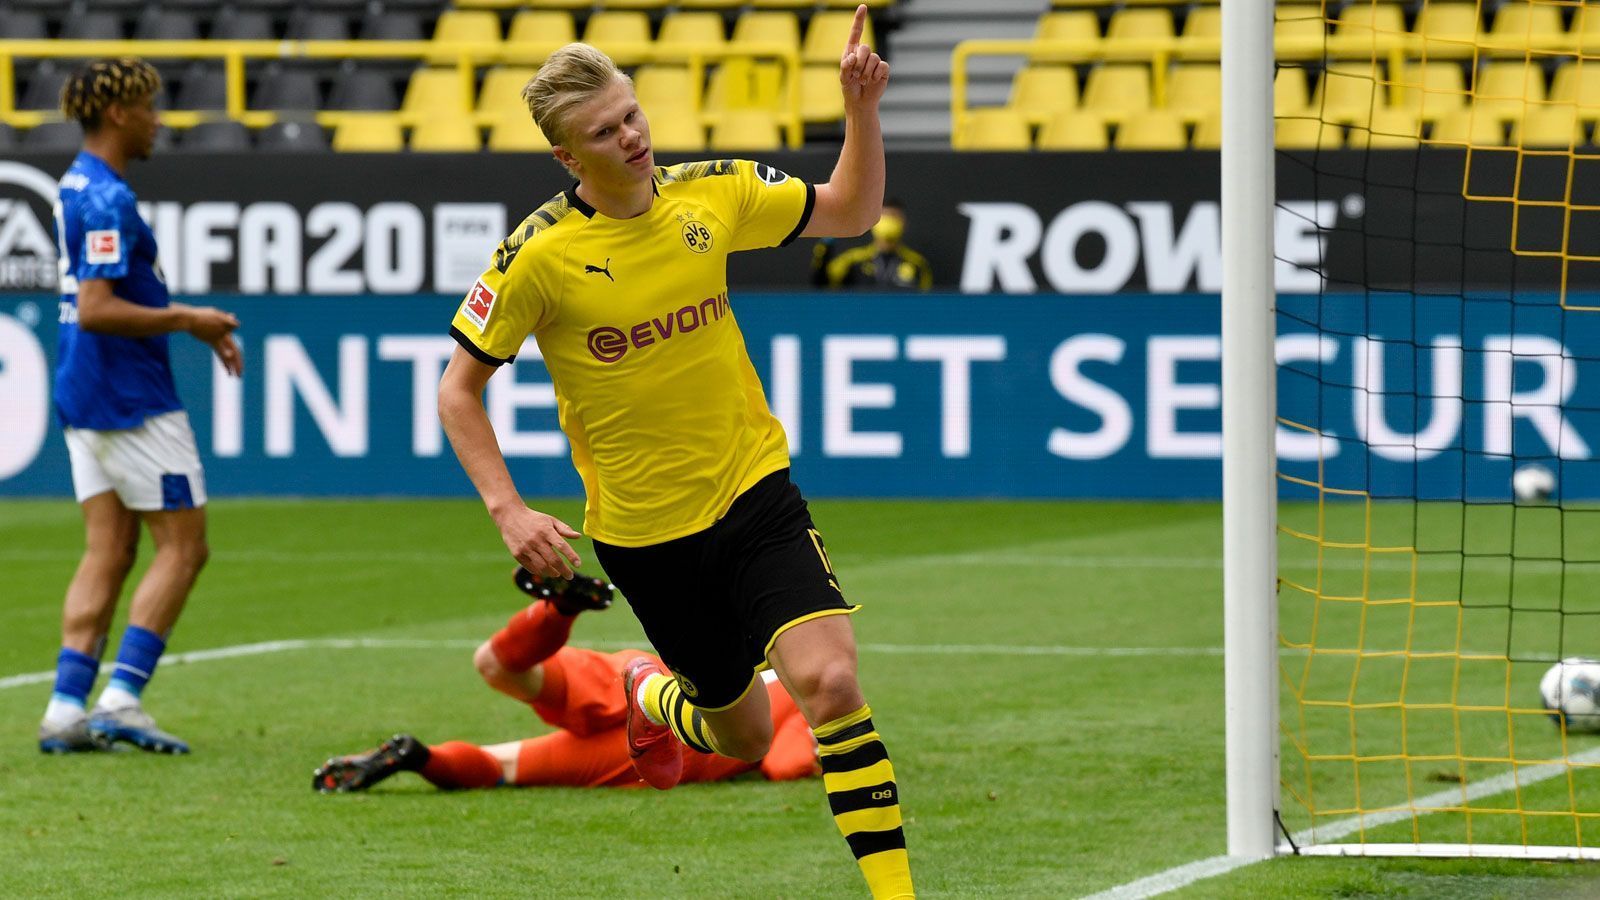 
                <strong>Platz 7: Erling Haaland</strong><br>
                 - Verein: Borussia Dortmund - Marktwertsprung: + 8 Millionen Euro - Marktwert: 80 Millionen Euro
              